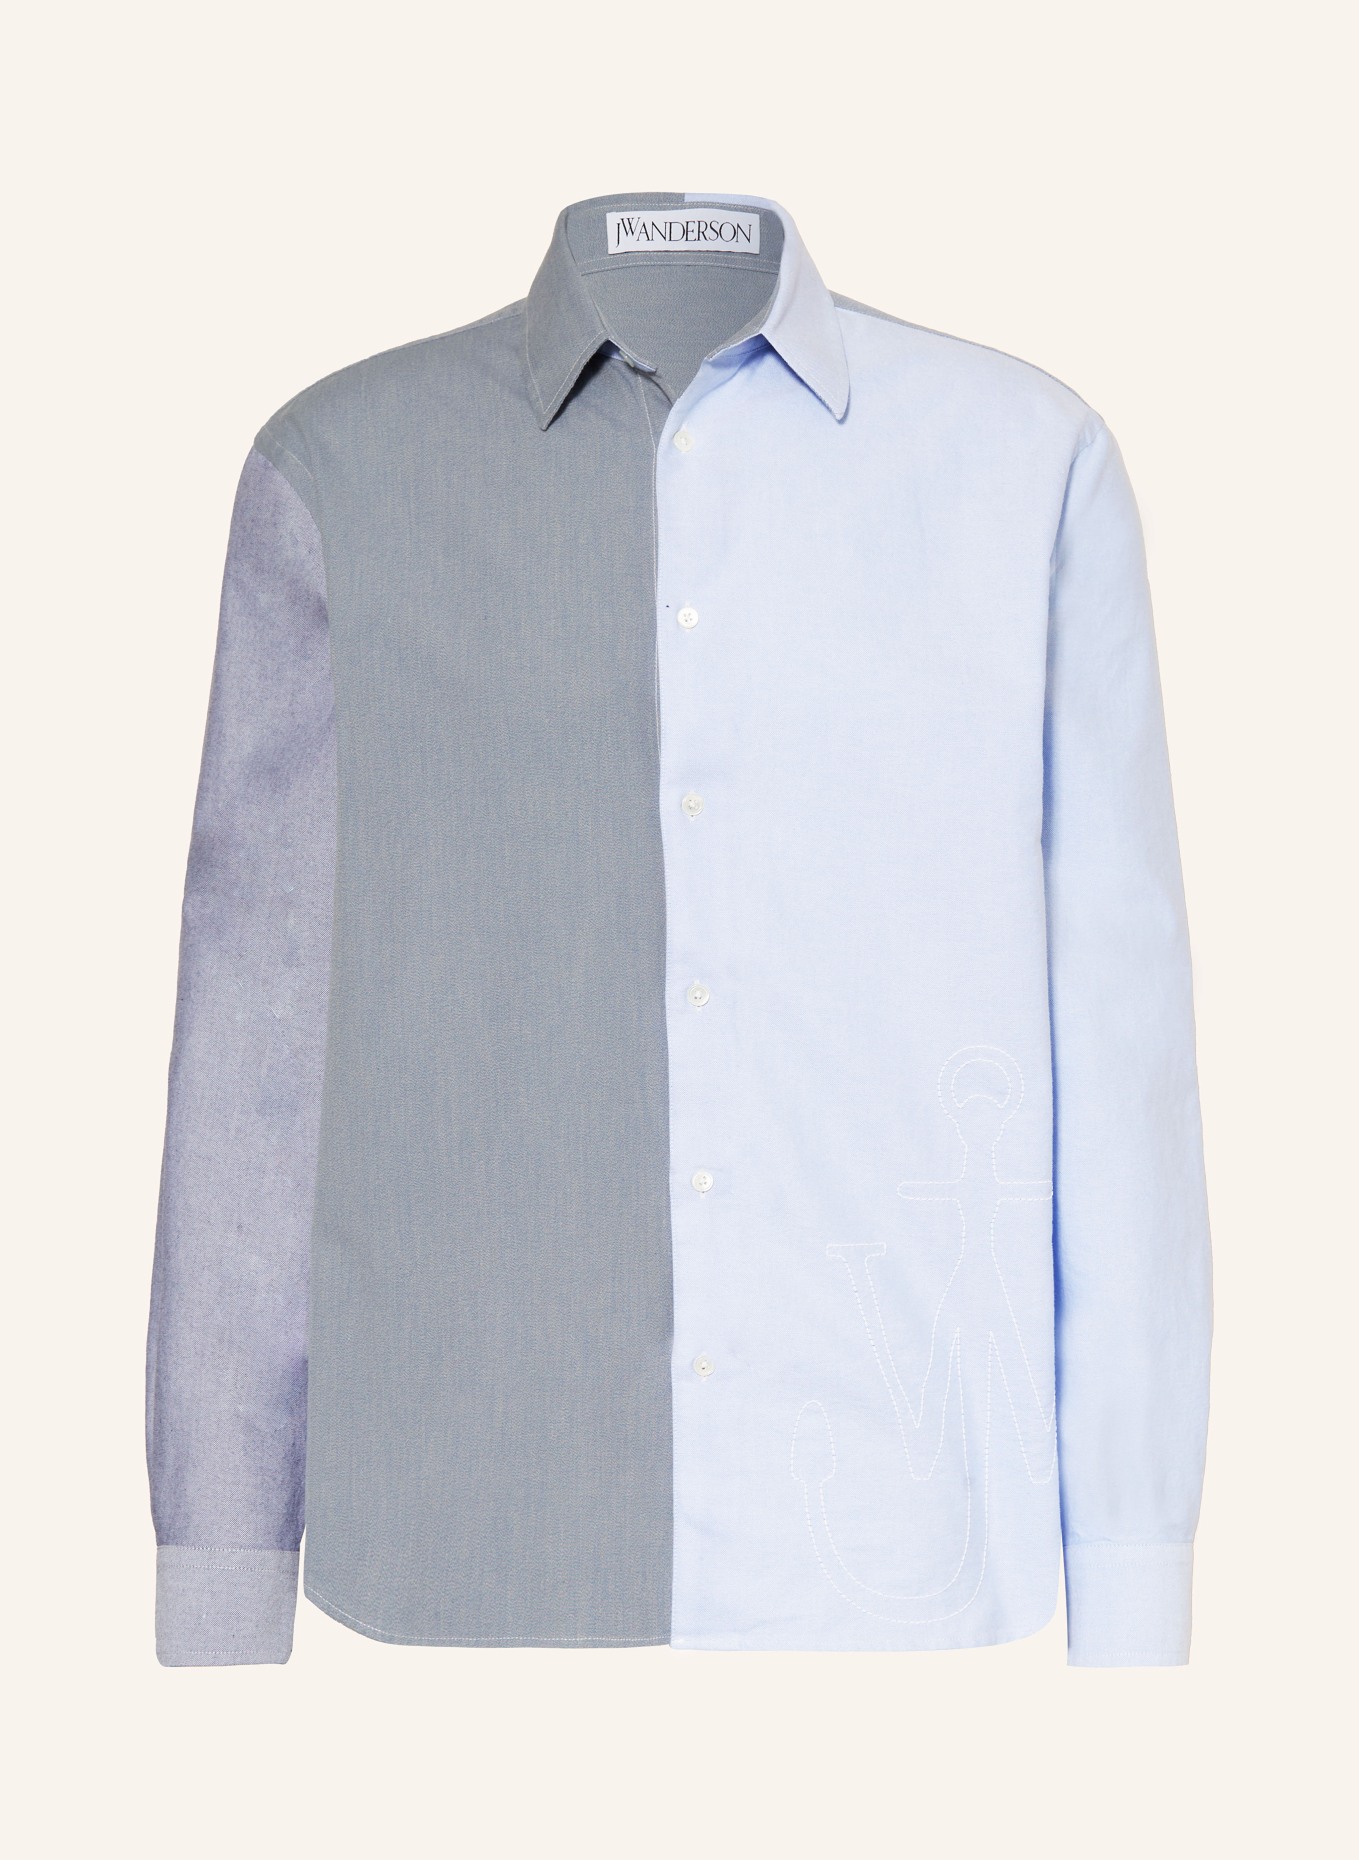 JW ANDERSON Hemd Comfort Fit, Farbe: BLAU (Bild 1)